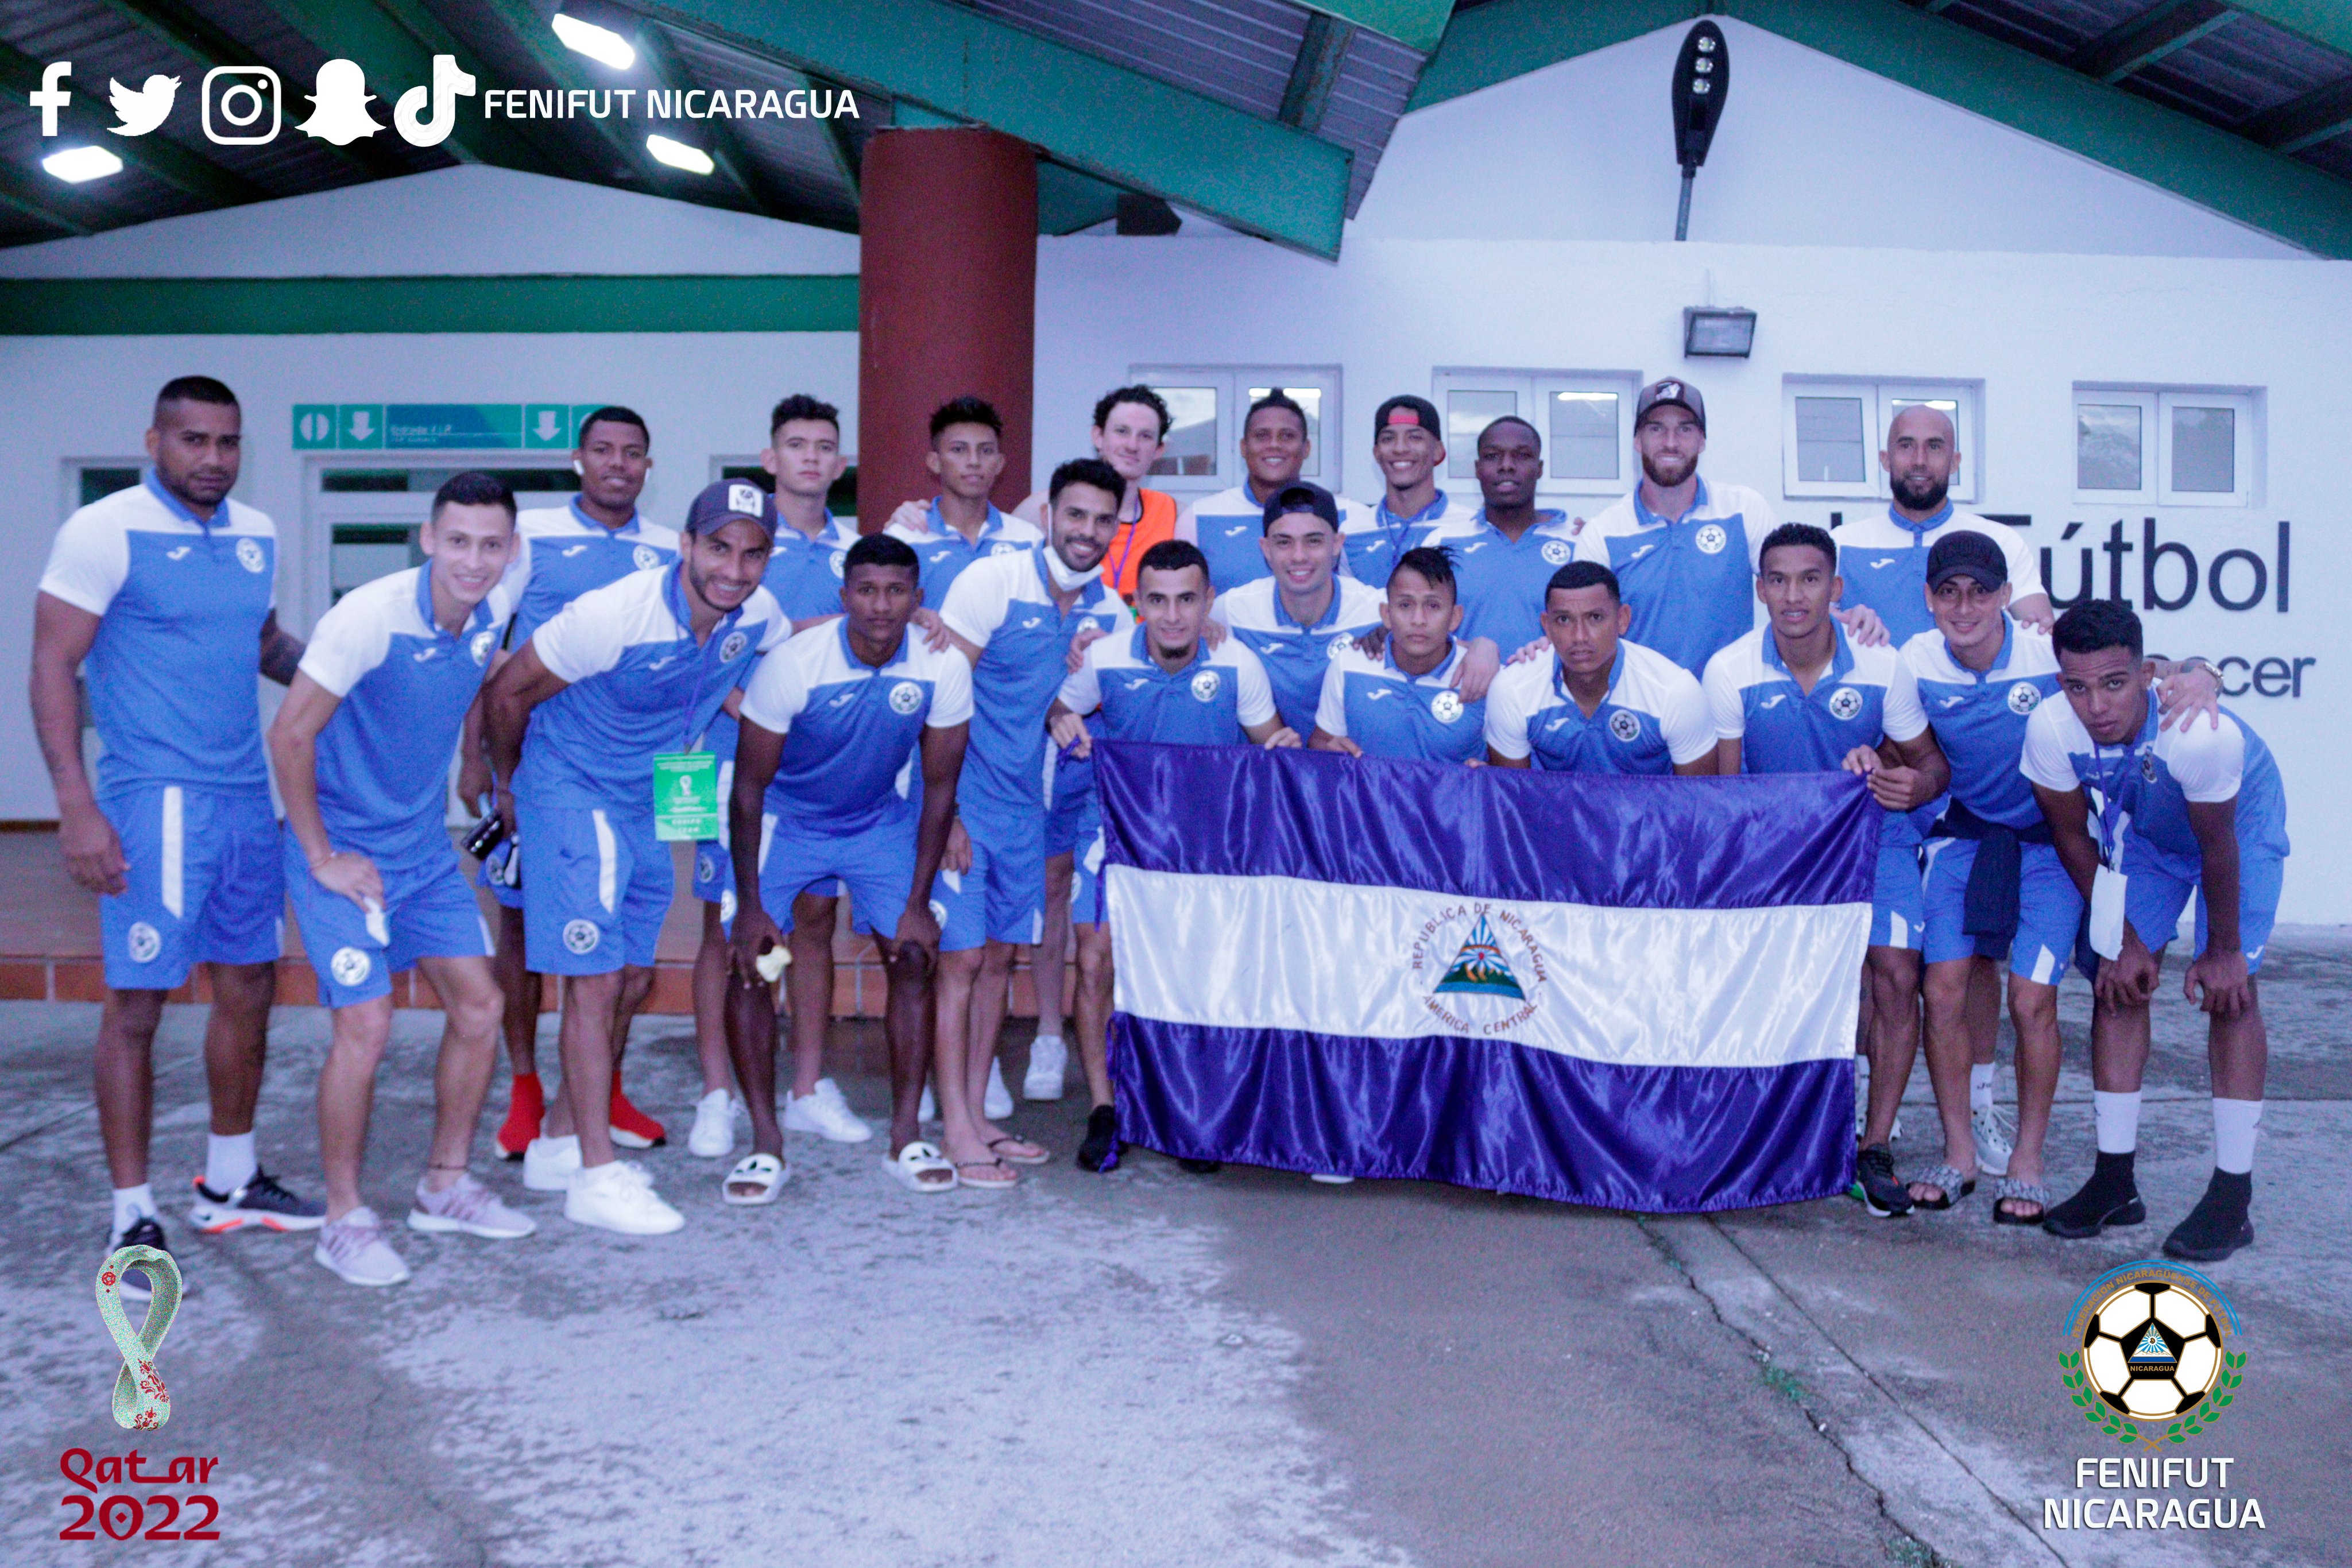 La Selección de Nicaragua muestra su alegría después de debutar con goleada contra Islas Turcas y Caicos. (Foto Federación de Nicaragua=.